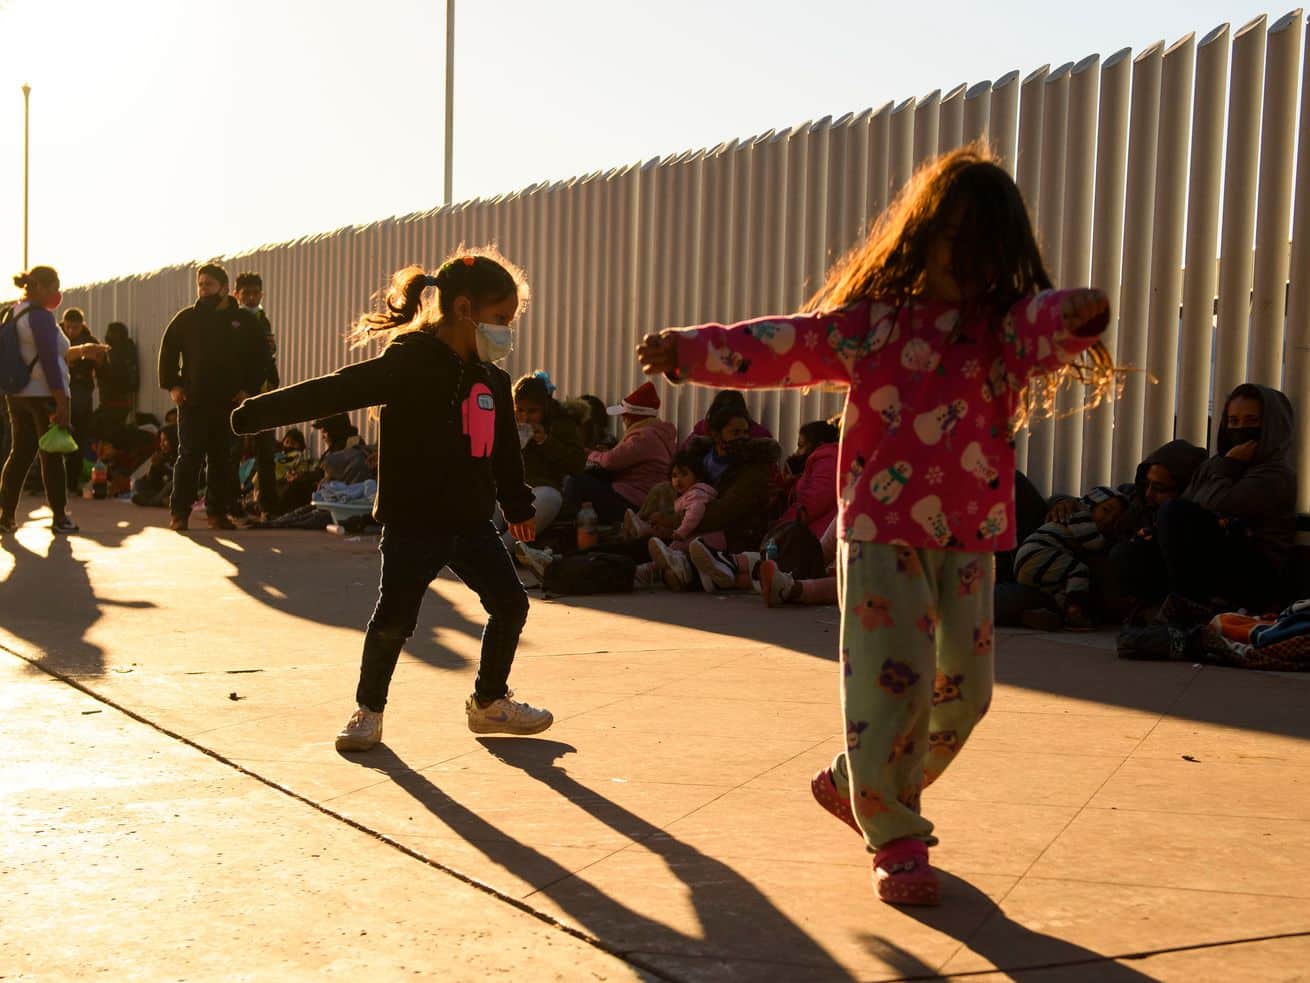 Biden is deploying FEMA to help manage an unprecedented surge in migrant children